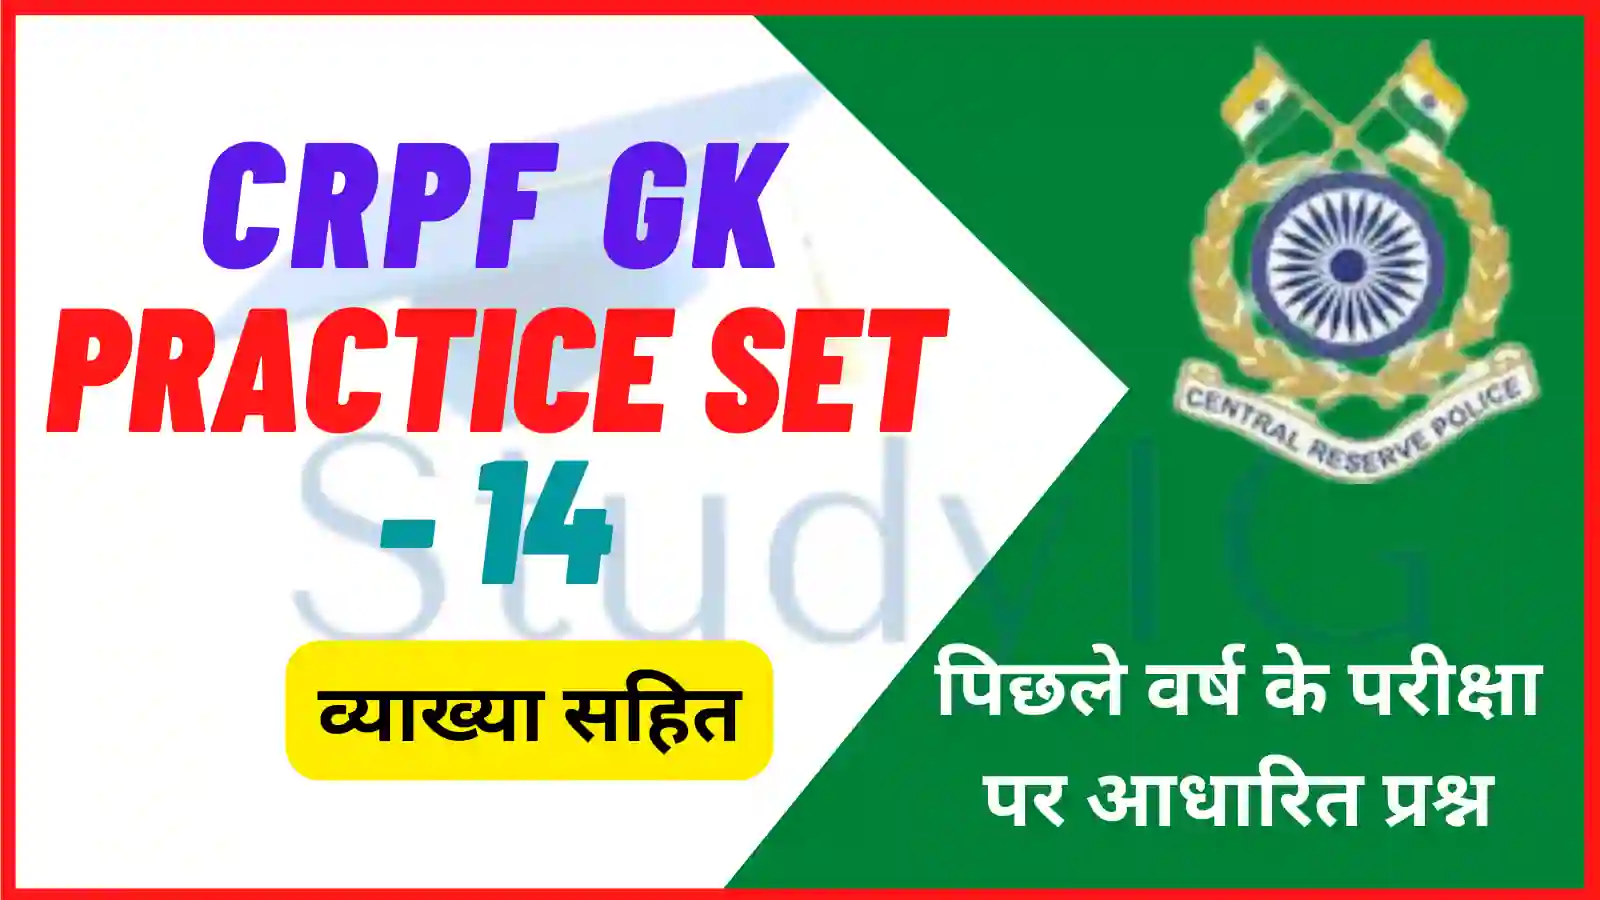 Crpf GK Practice Set - 14